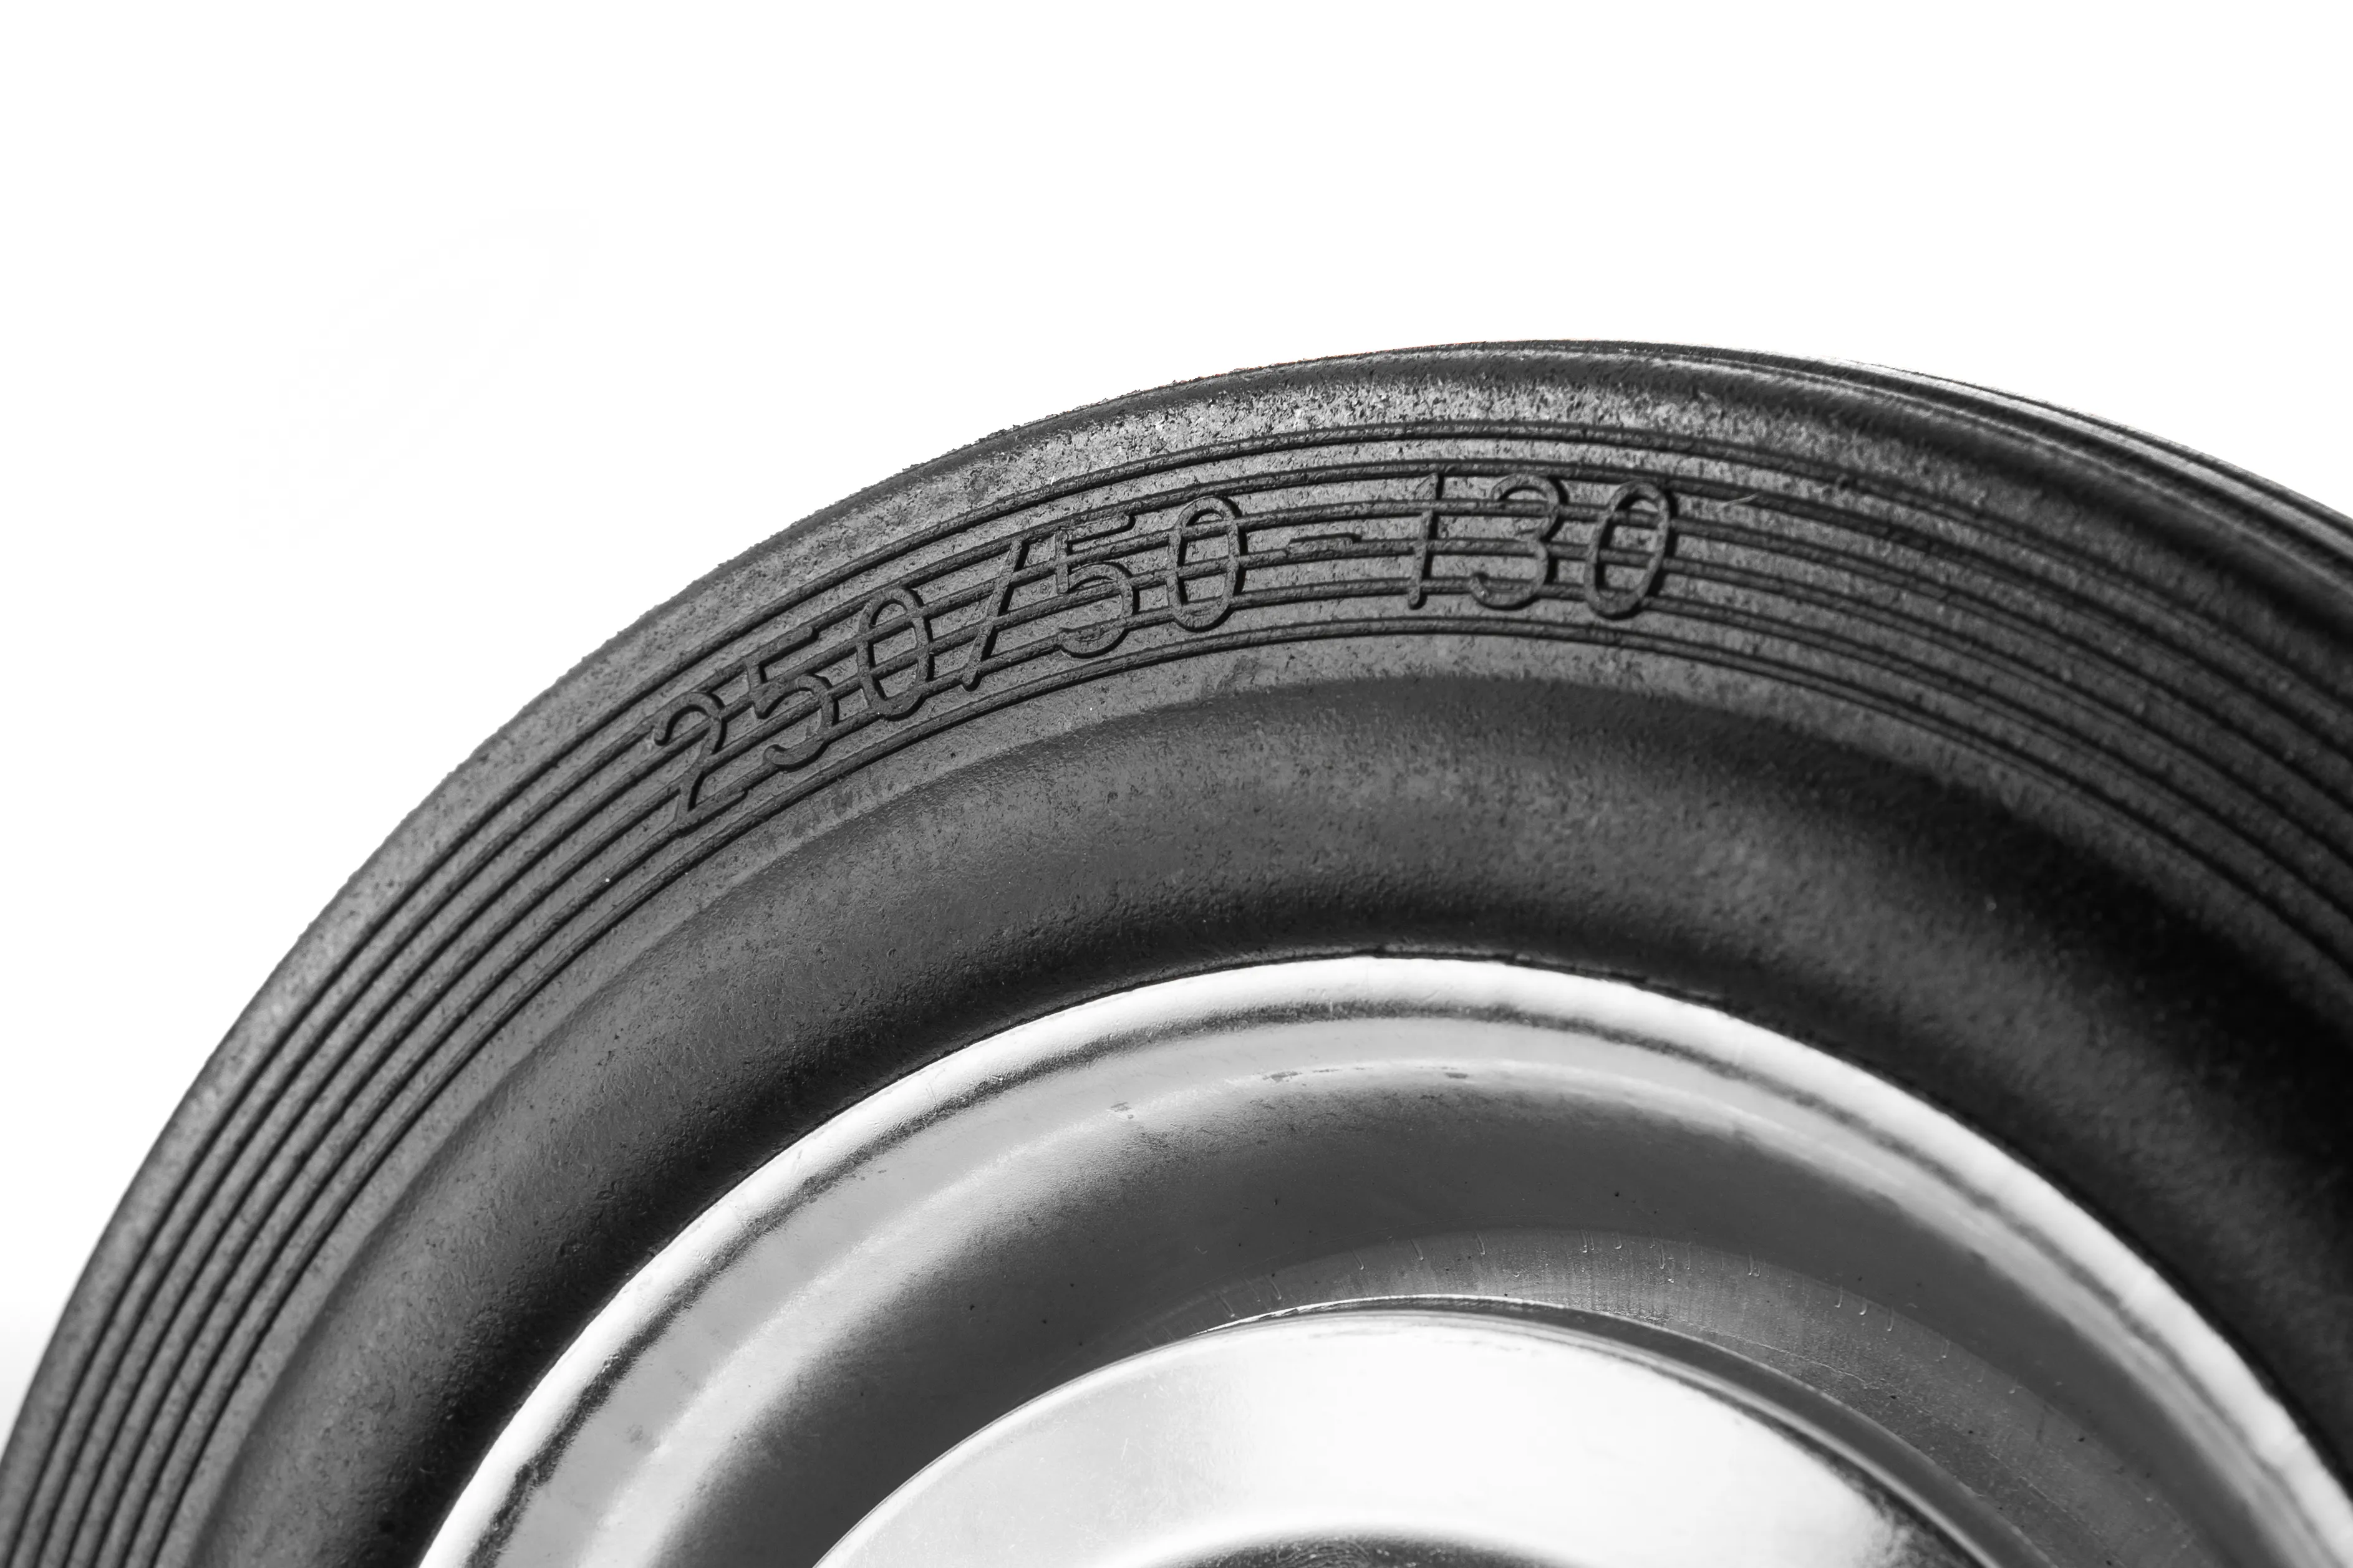 Промышленное колесо 250 мм (площадка, неповоротное, черная резина, роликоподшипник) - FC 85